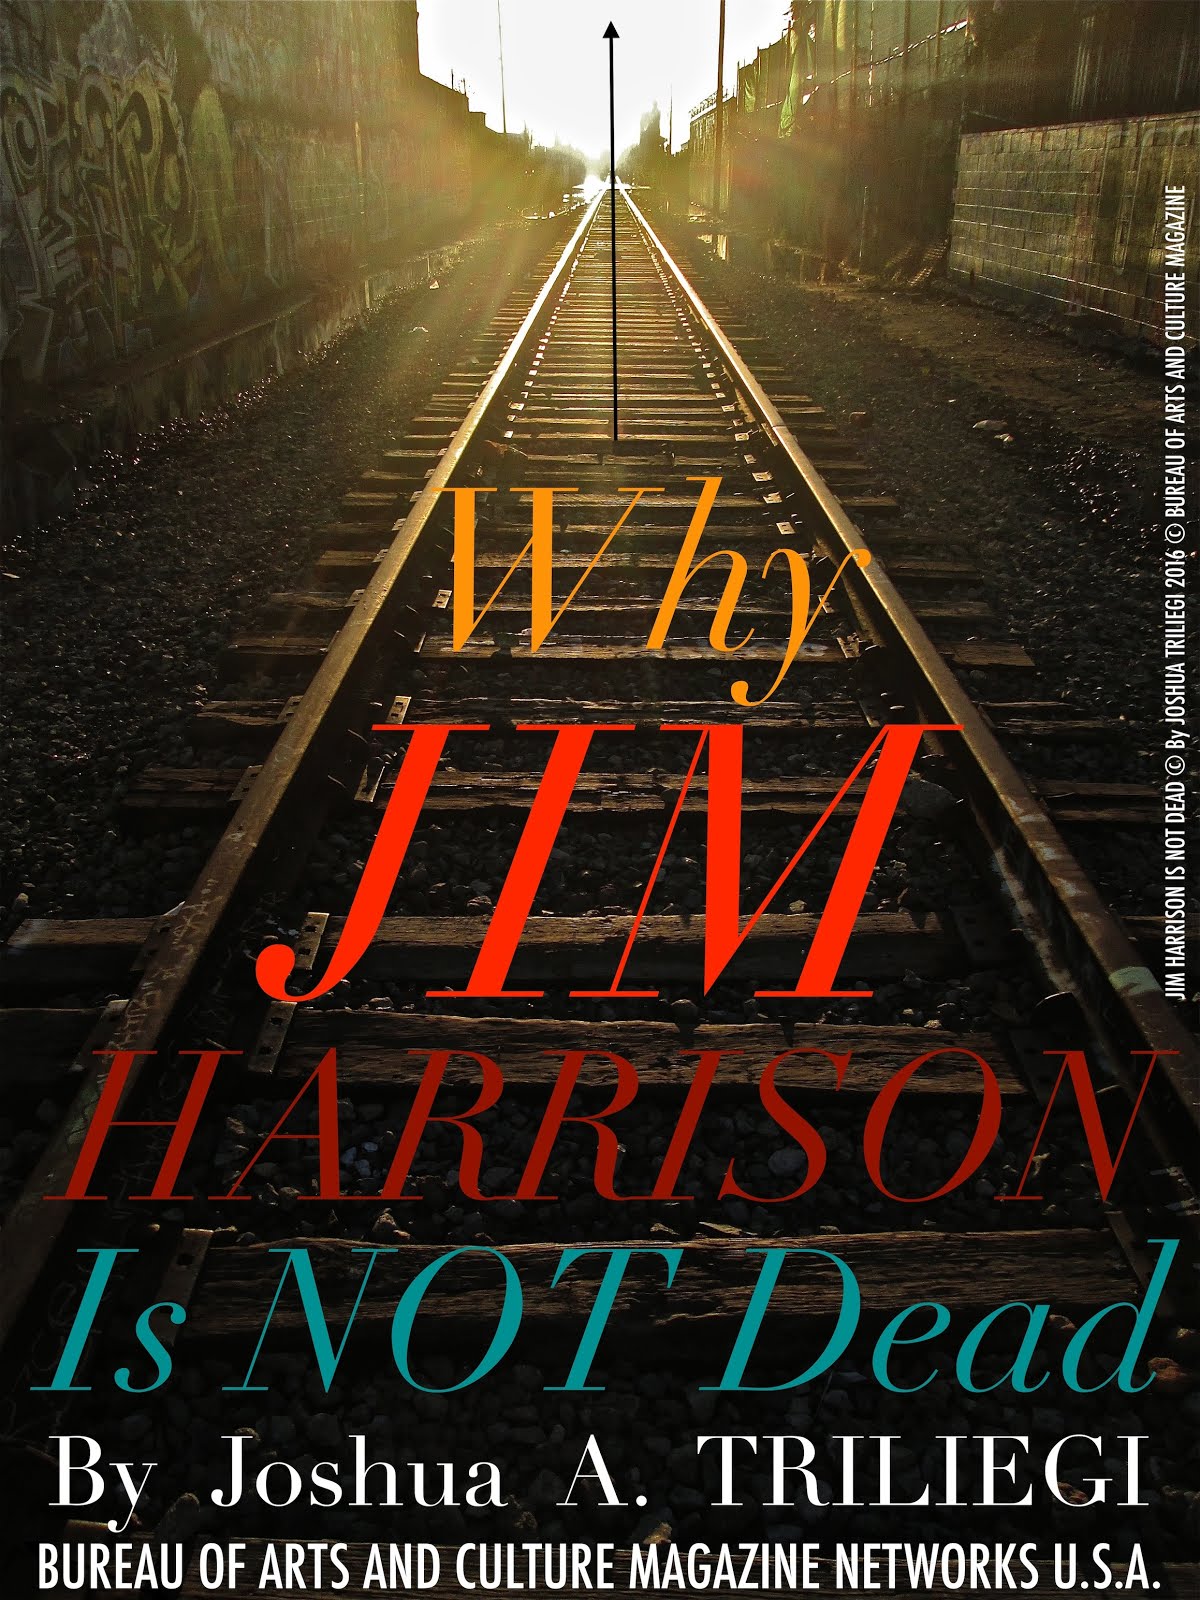 JIM HARRISON is NOT DEAD